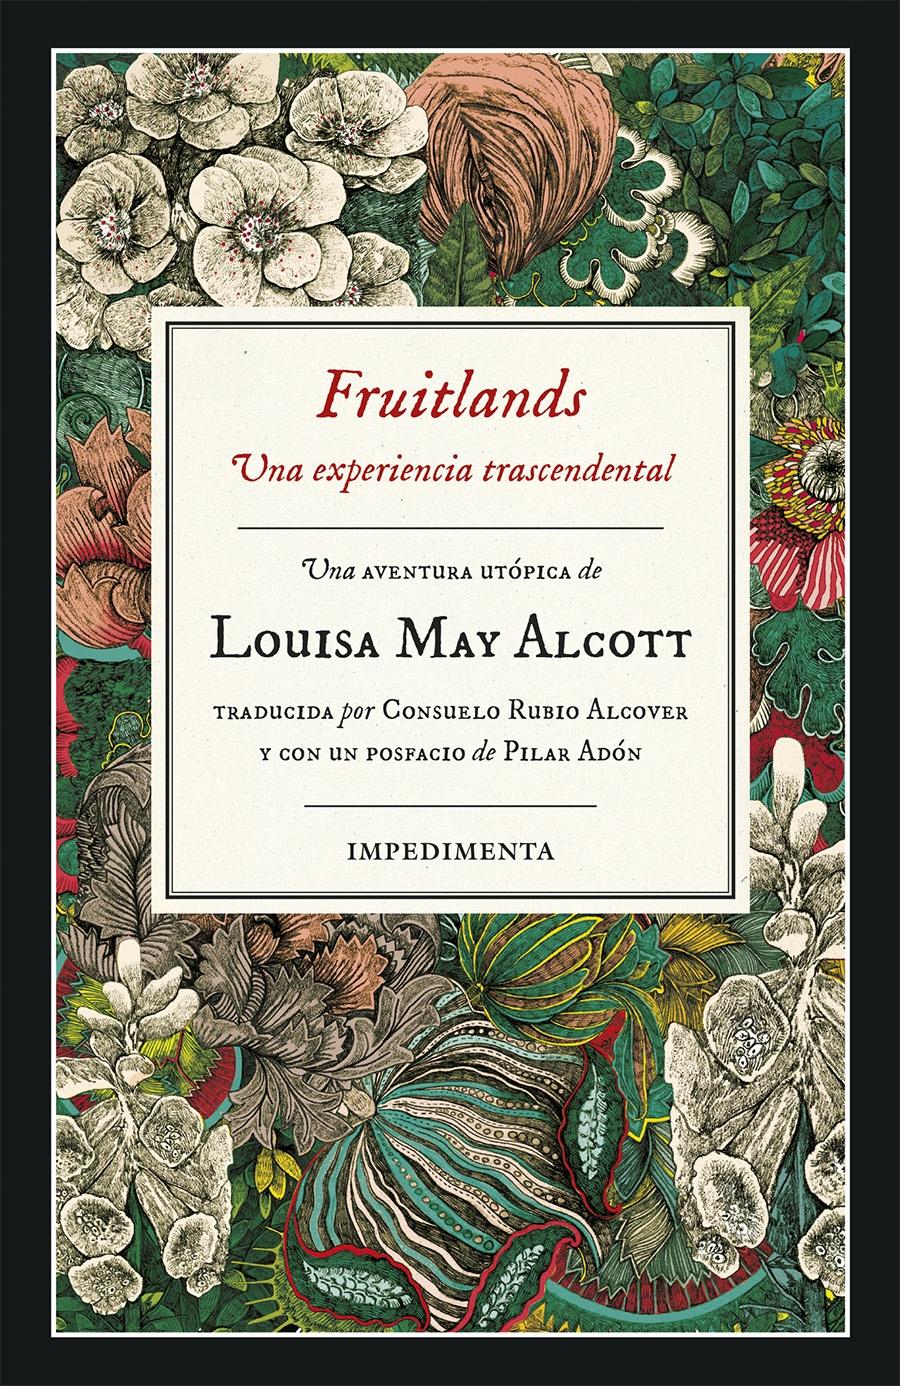 Fruitlands "Una Experiencia Trascendental". 